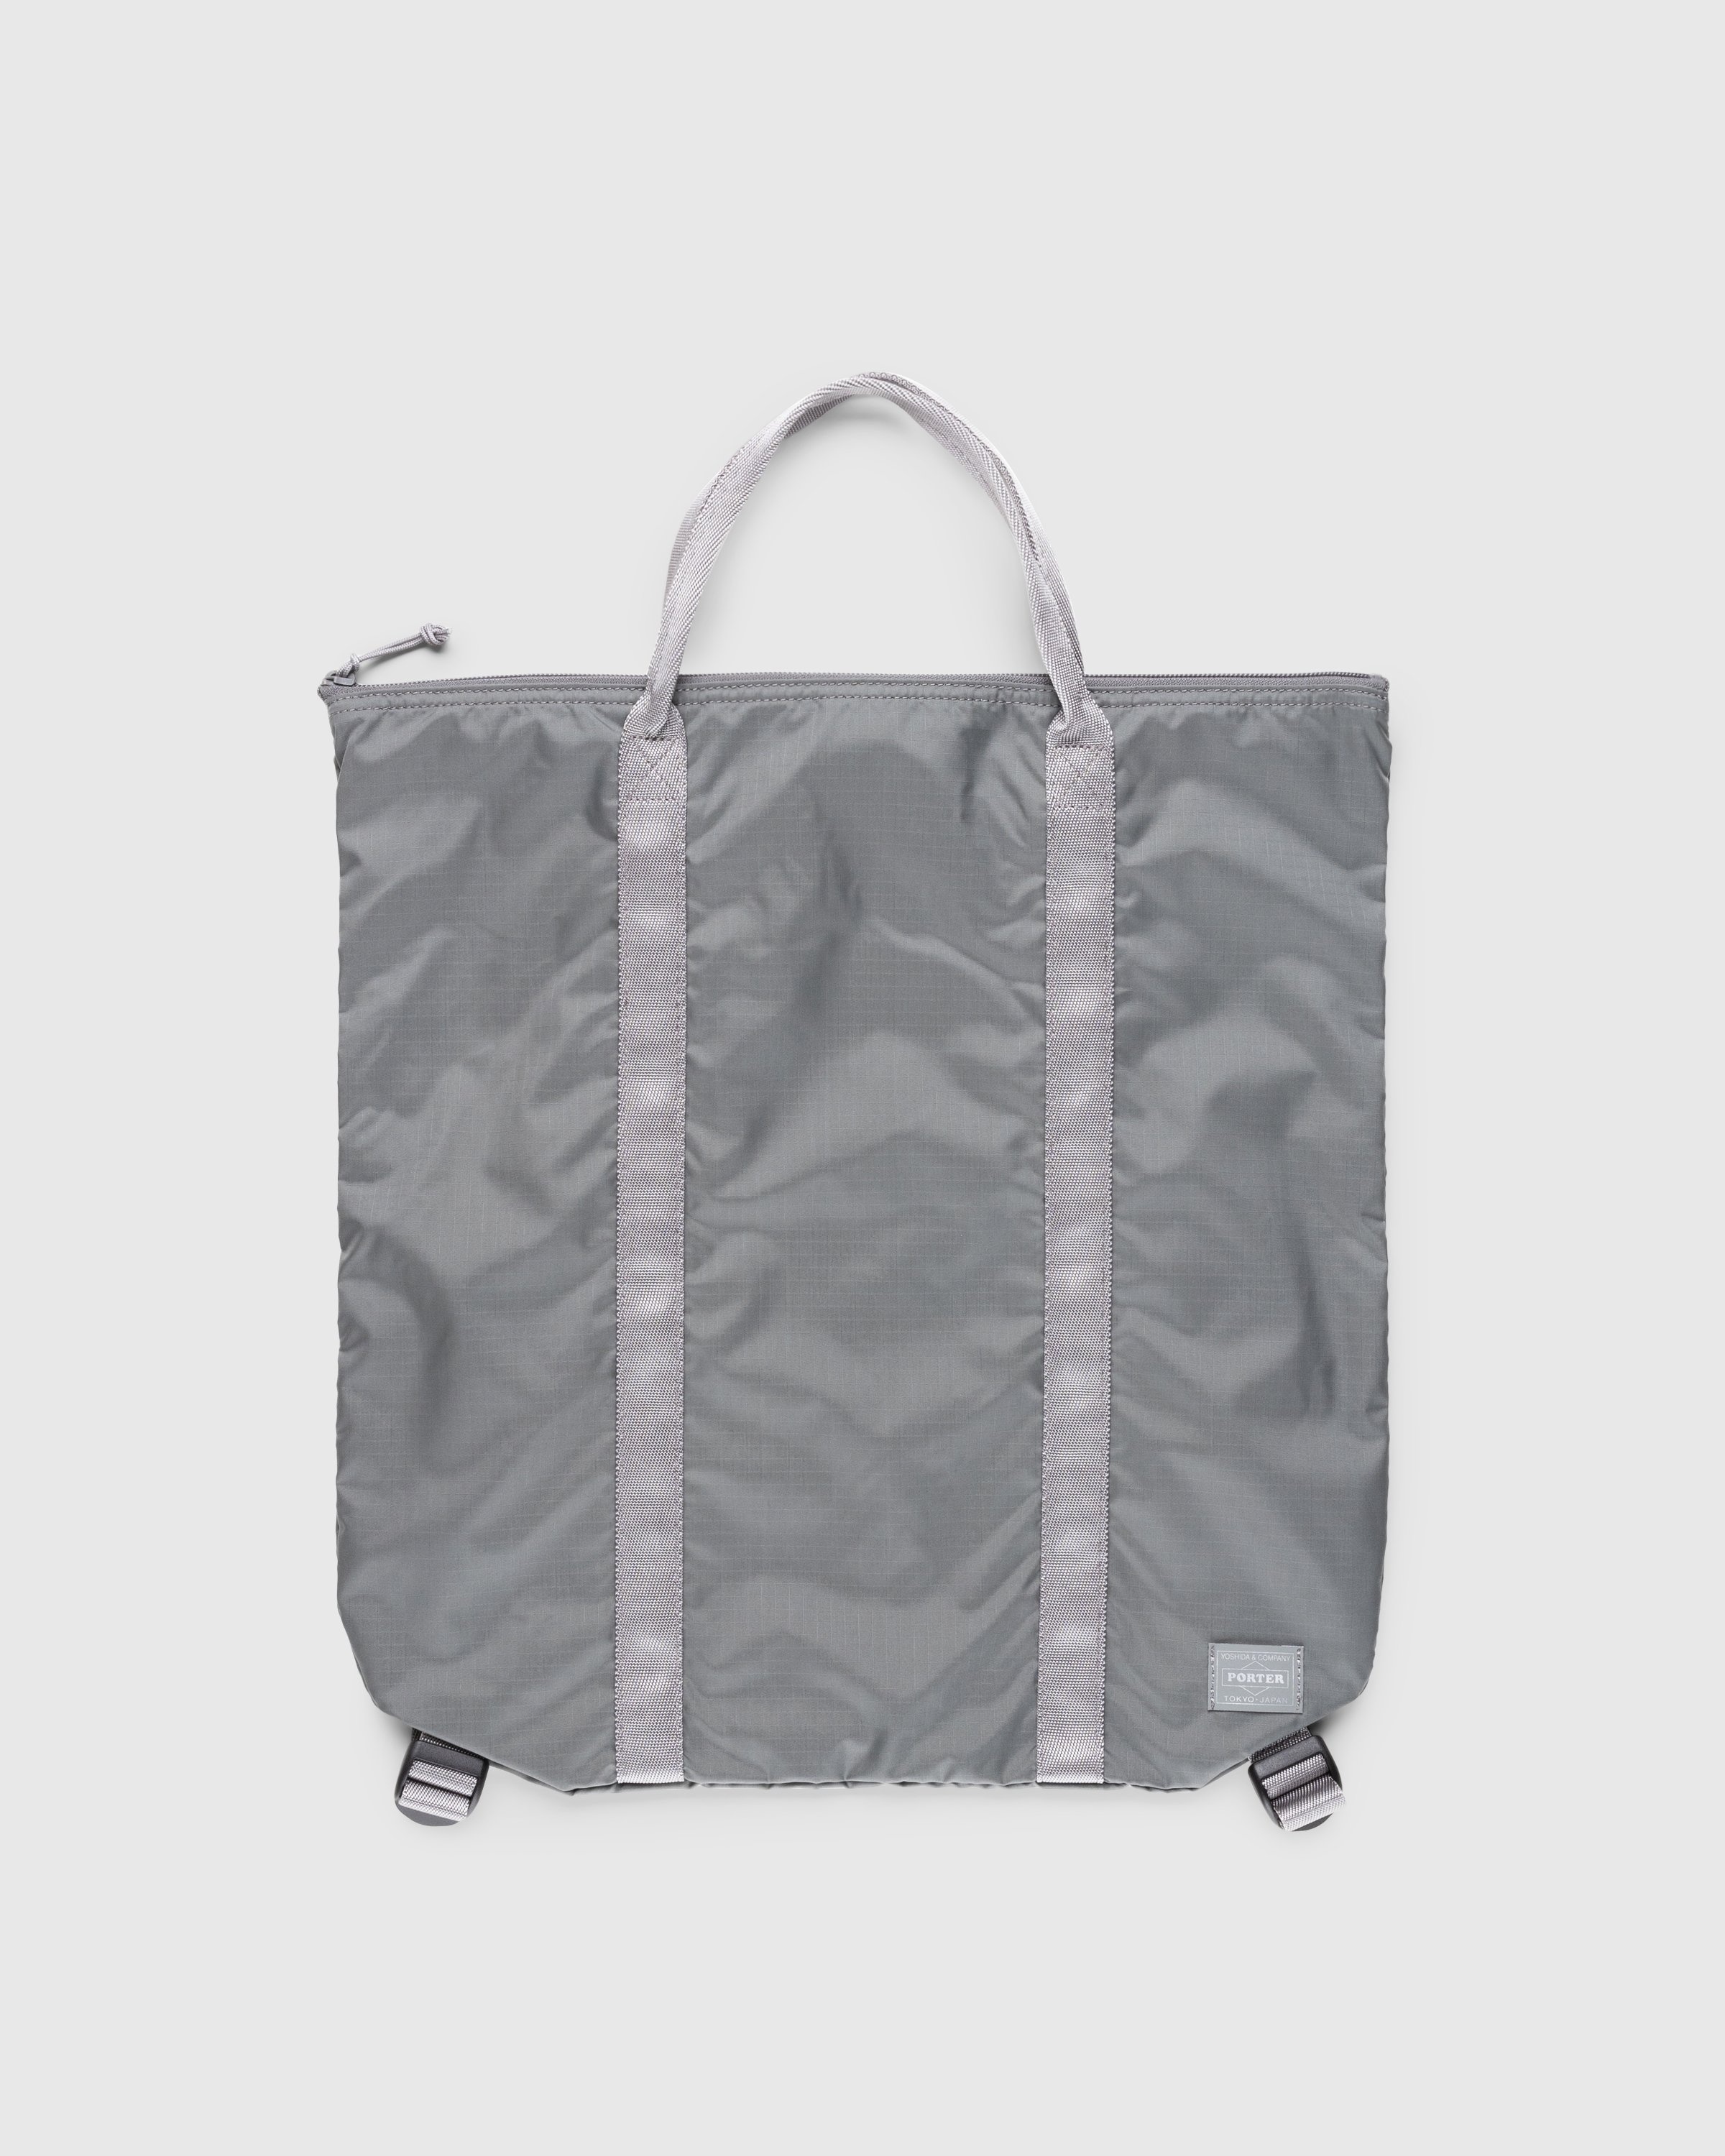 Porter-Yoshida & Co. – Flex 2-Way Tote Bag Grey - Bags - Grey - Image 1